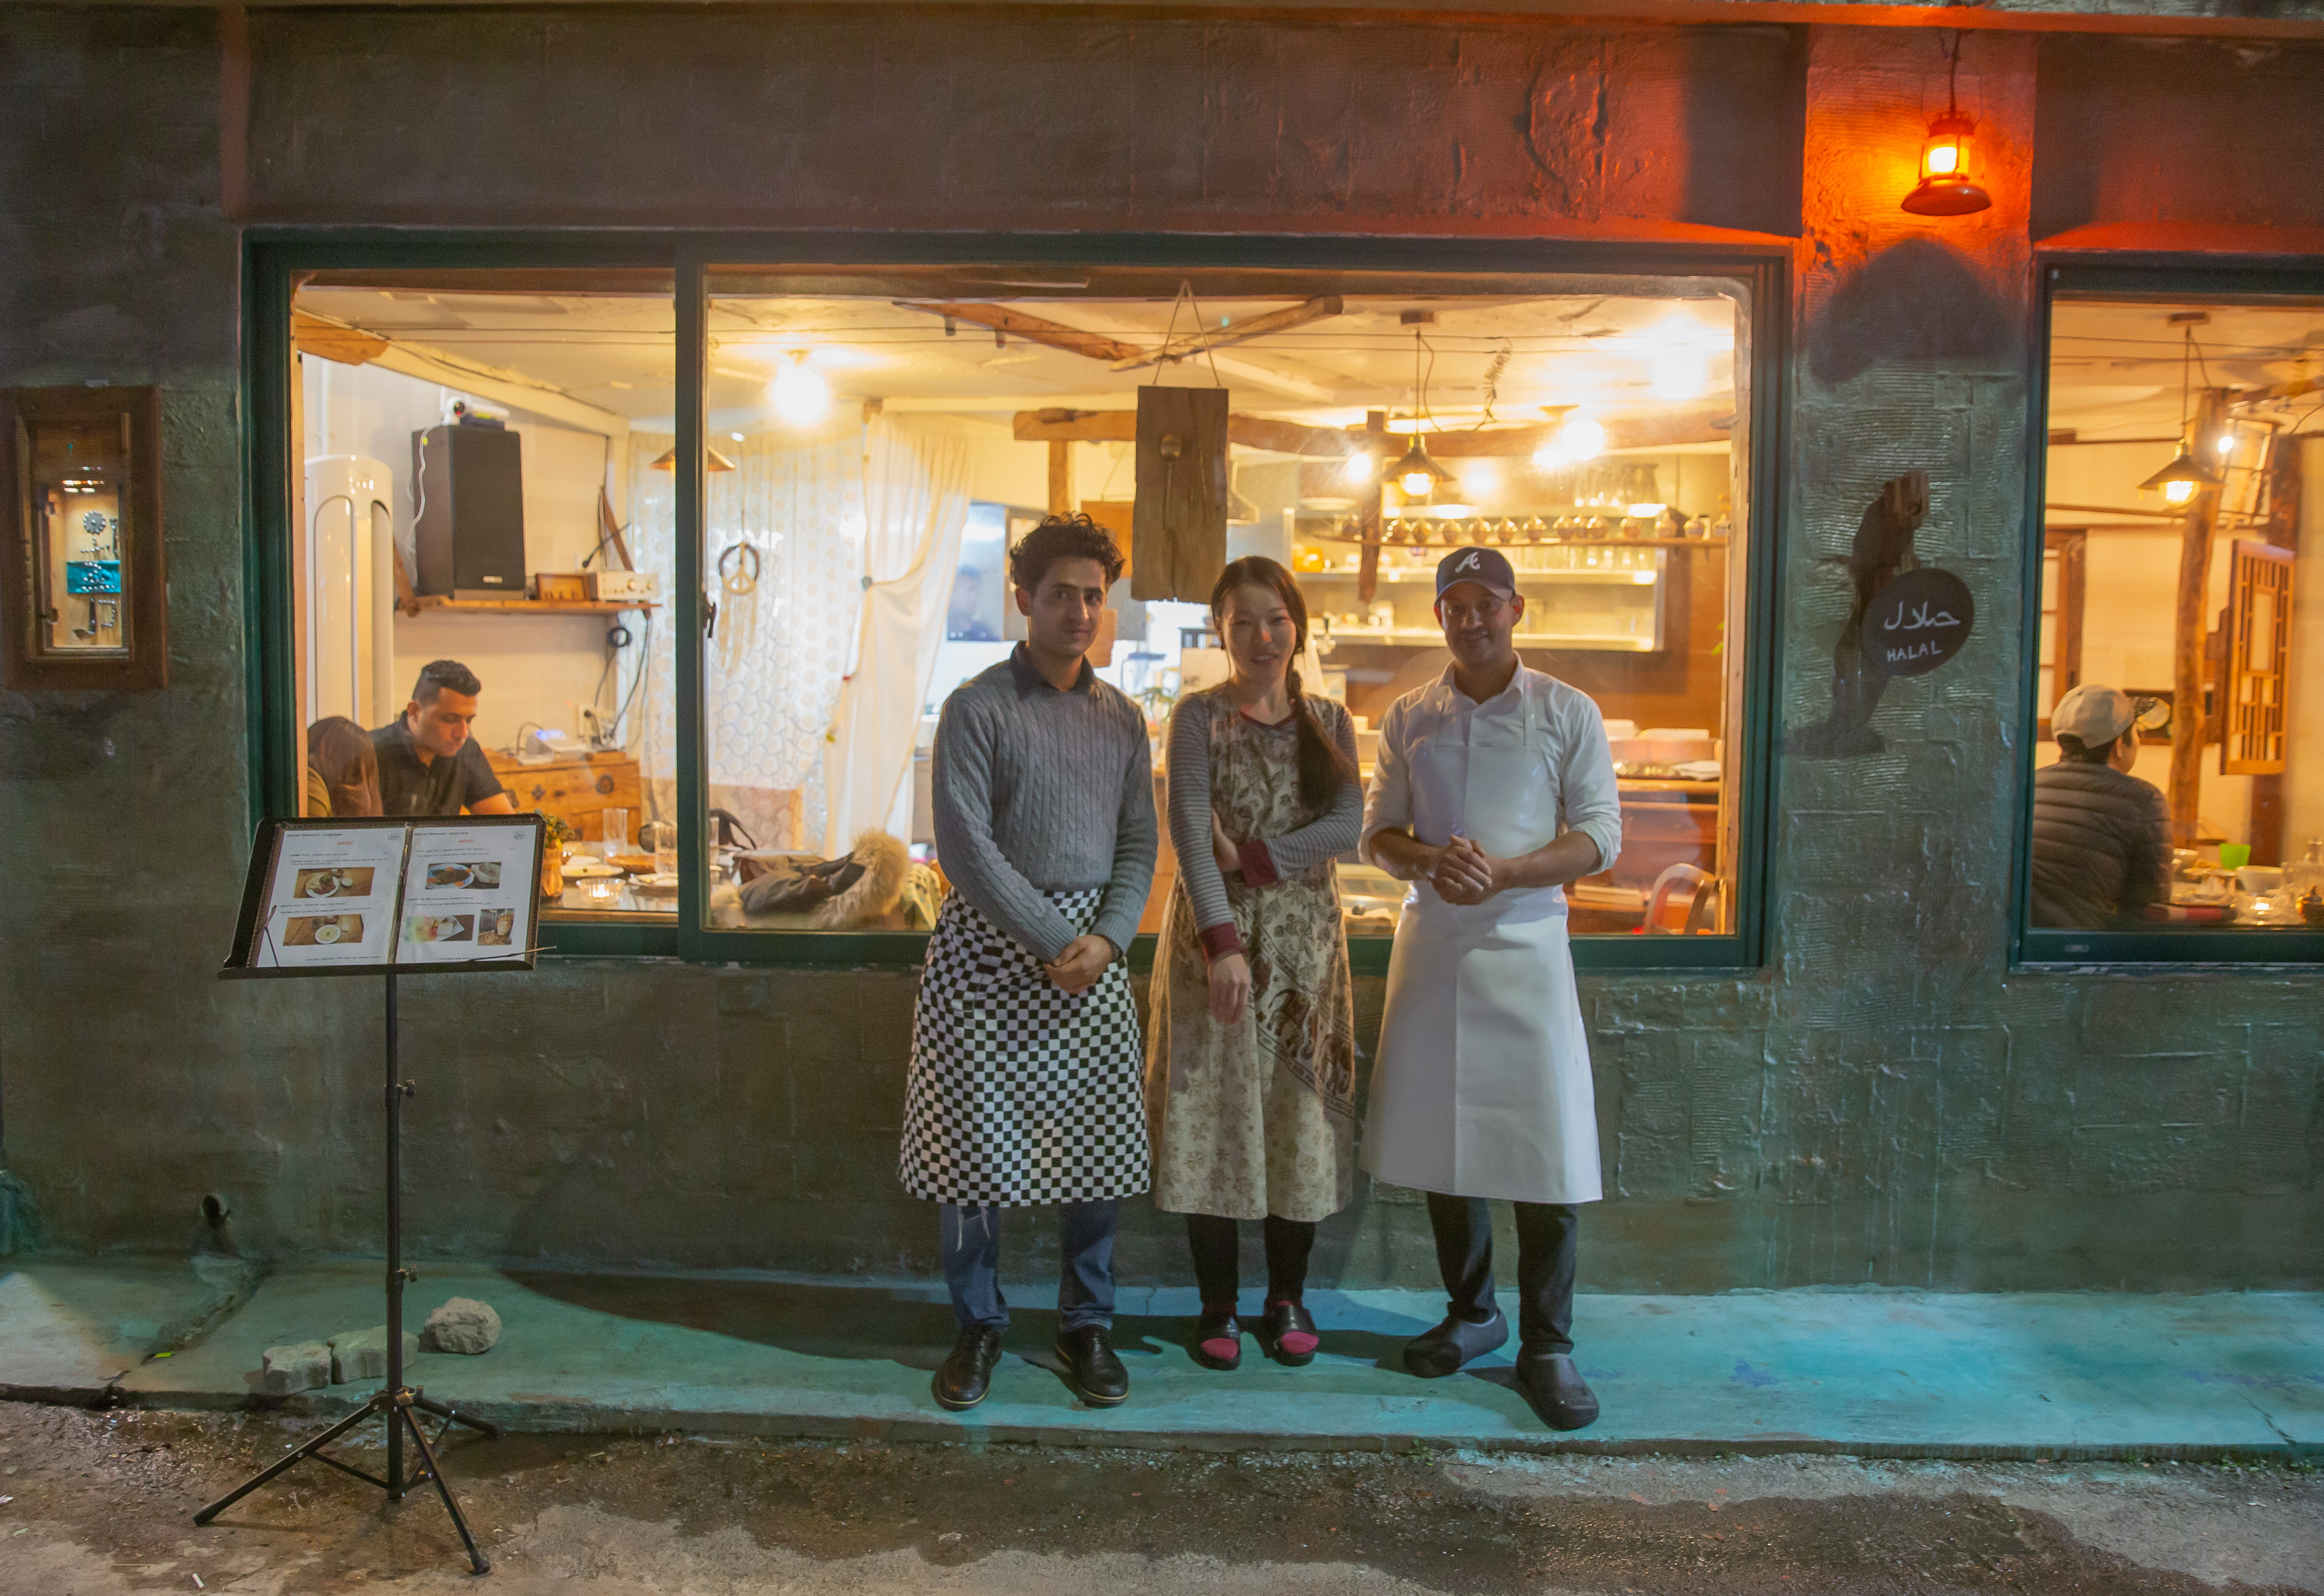 [19.02.08] 한국인의 입맛과 마음을 사로잡은 제주도의 예멘 식당